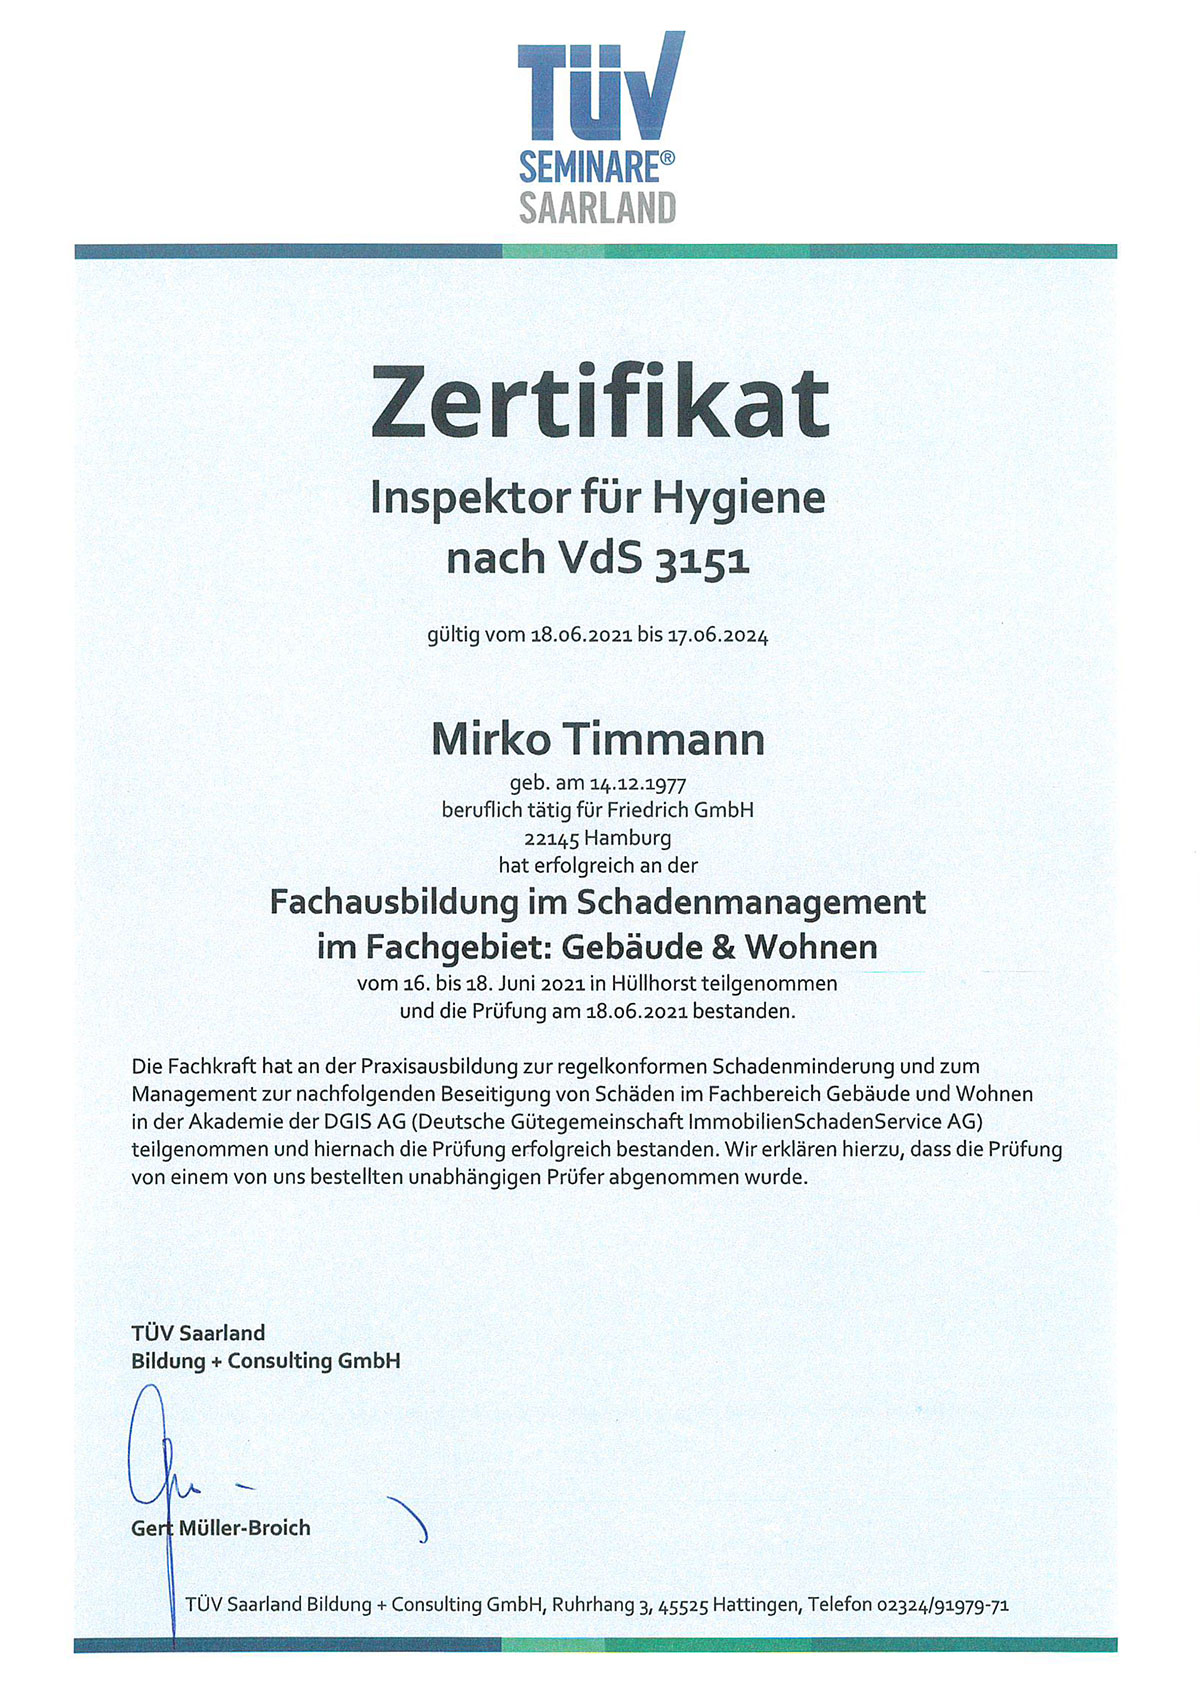 Zertifikat Inspektor für Hygiene Mirko Timmann